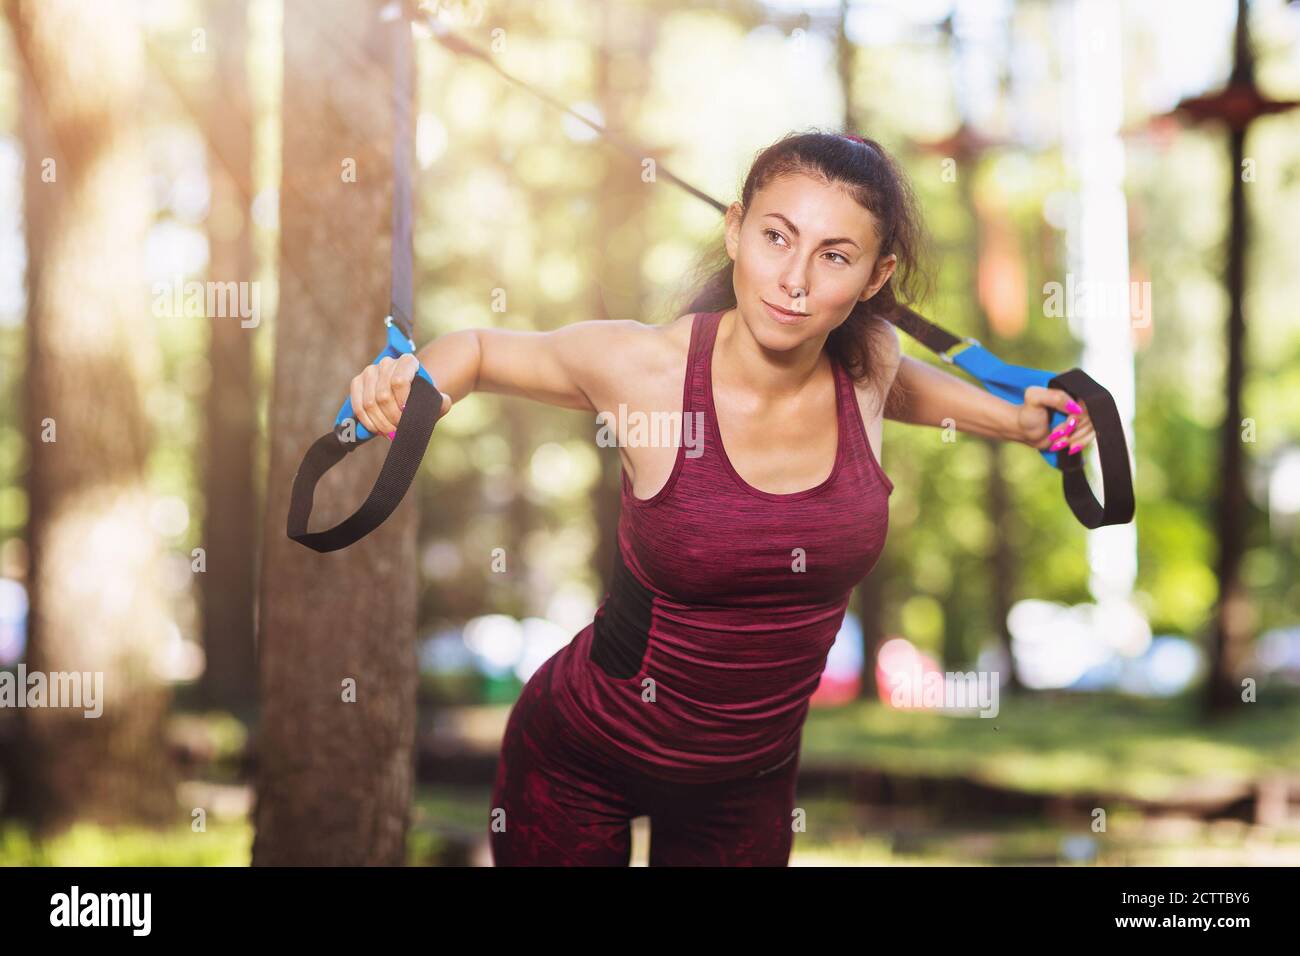 Junge Frau macht Übungen im Park mit Fitness-Gurten an einem Baum befestigt. Ein Athlet trainiert seine Brustmuskeln an einem warmen Sommermorgen Stockfoto